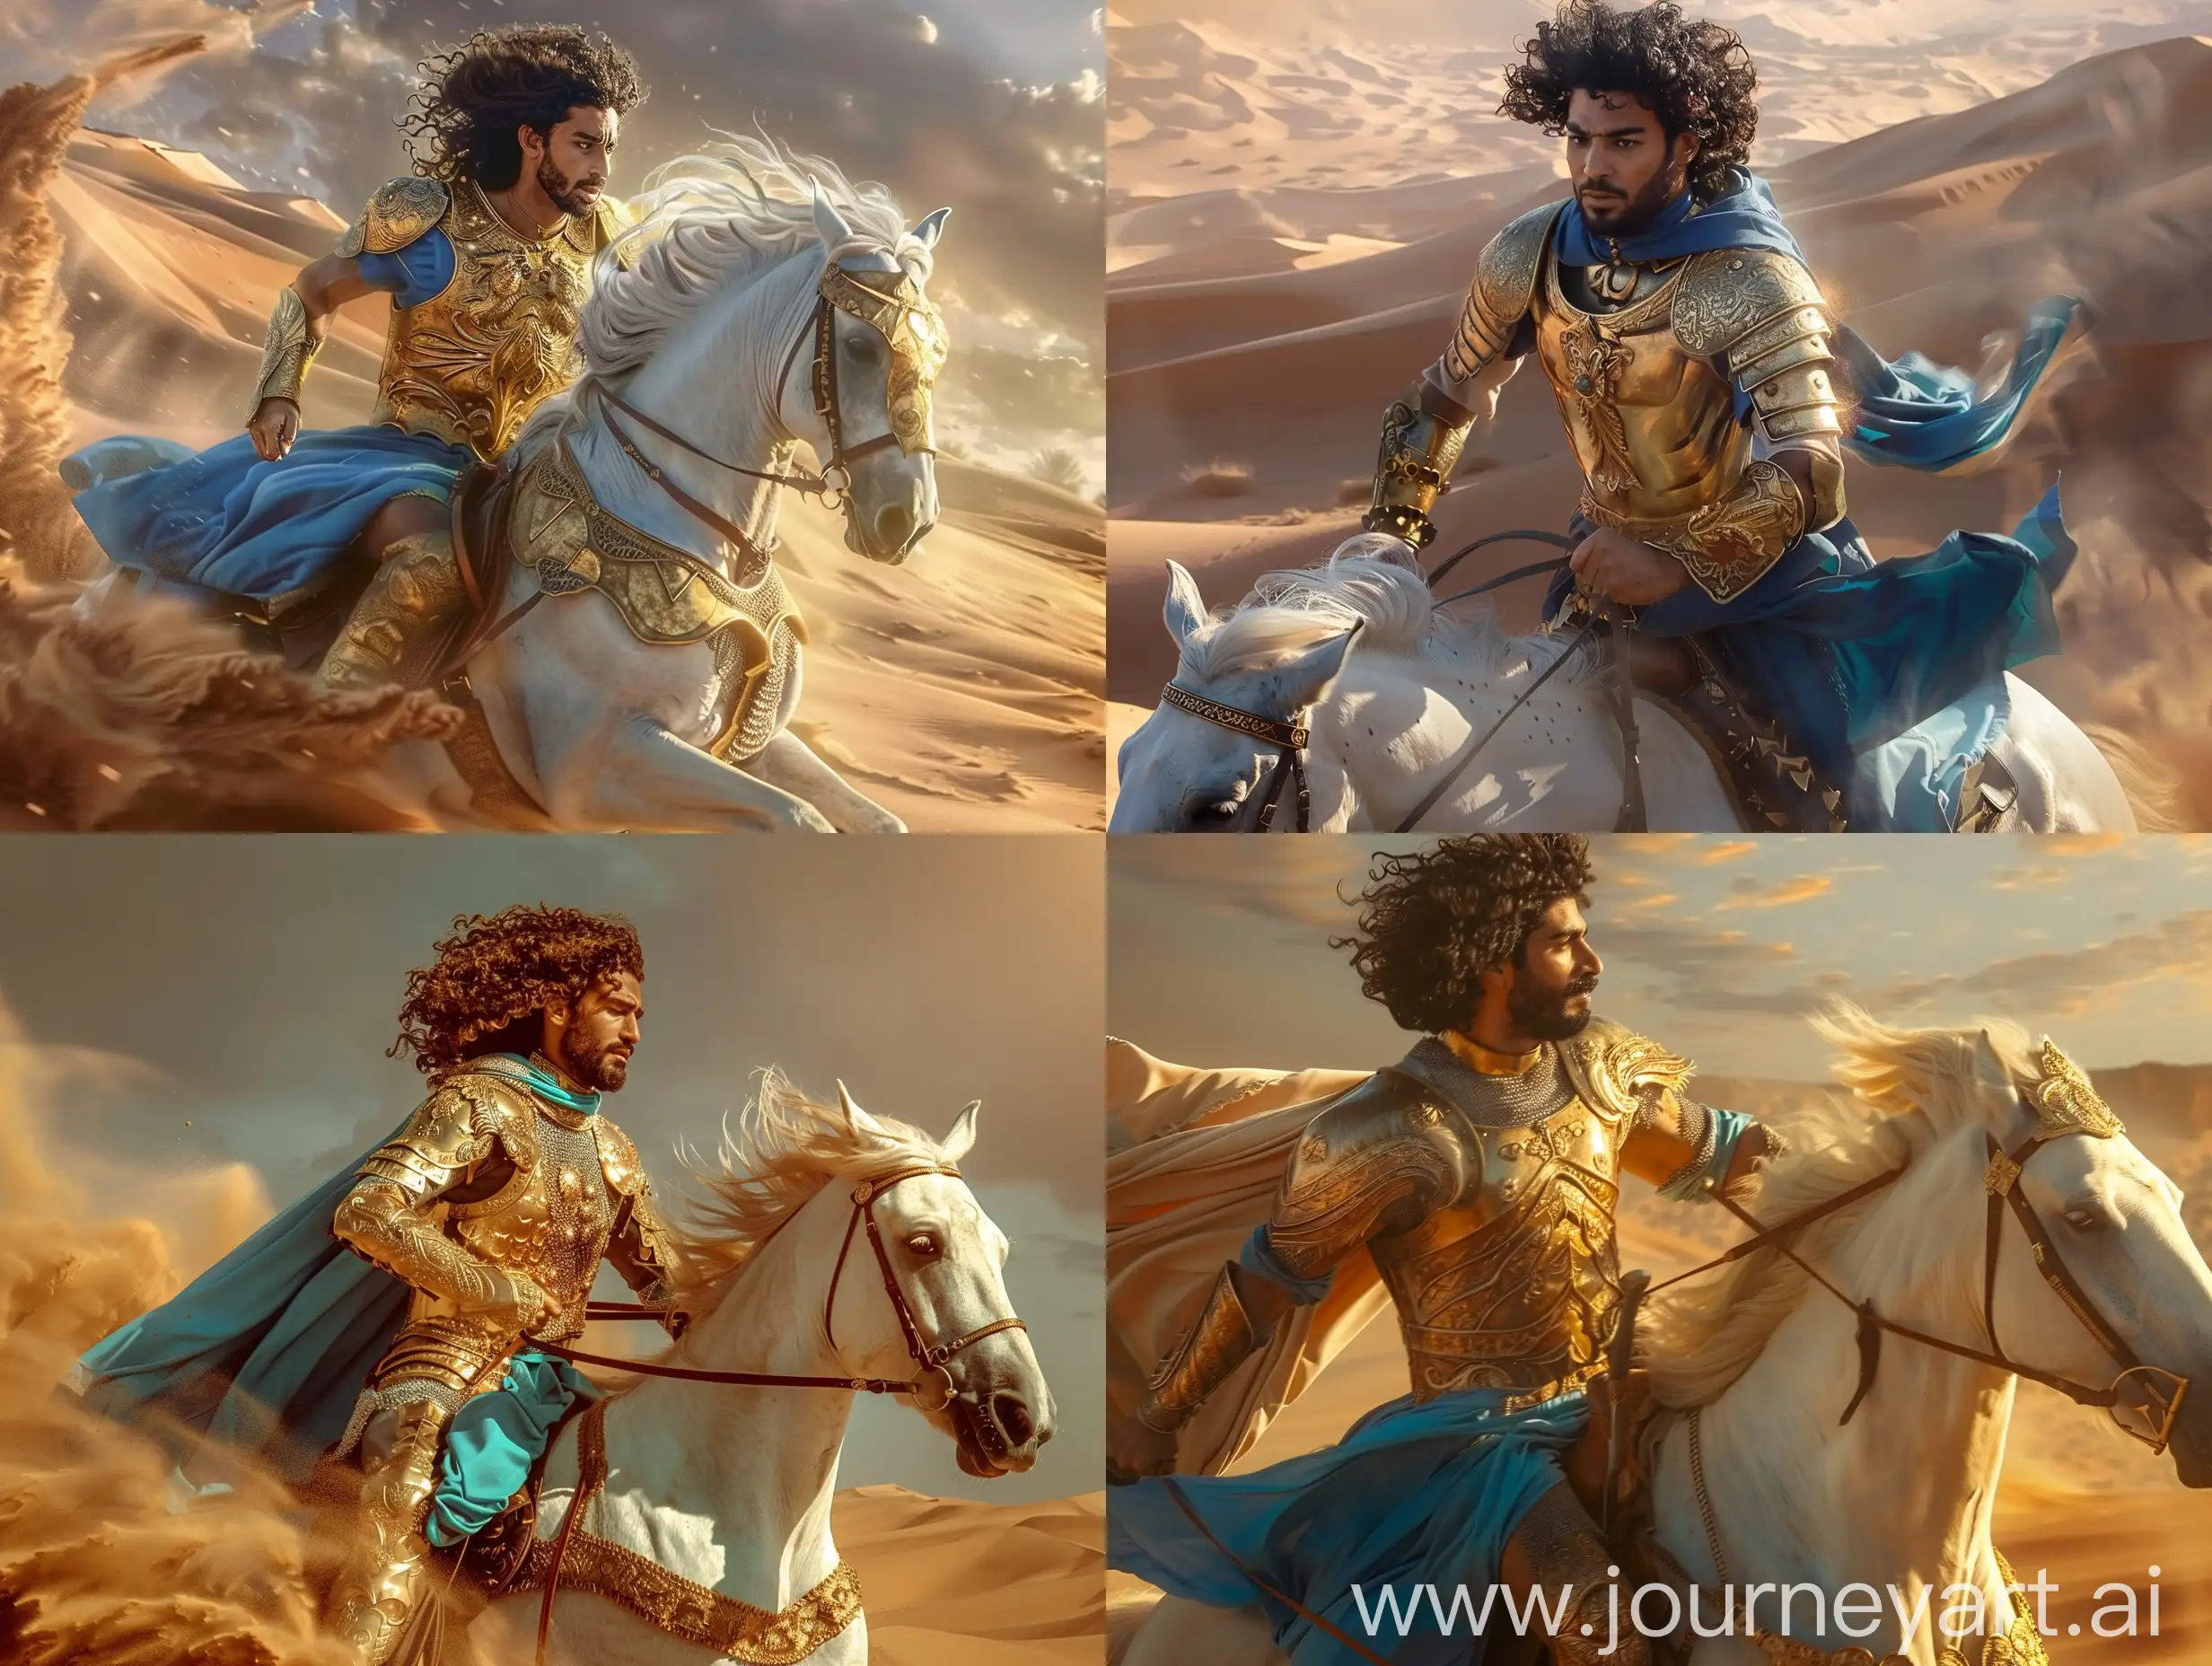 Bearded-Knight-in-Golden-Armor-Riding-through-Desert-Sands